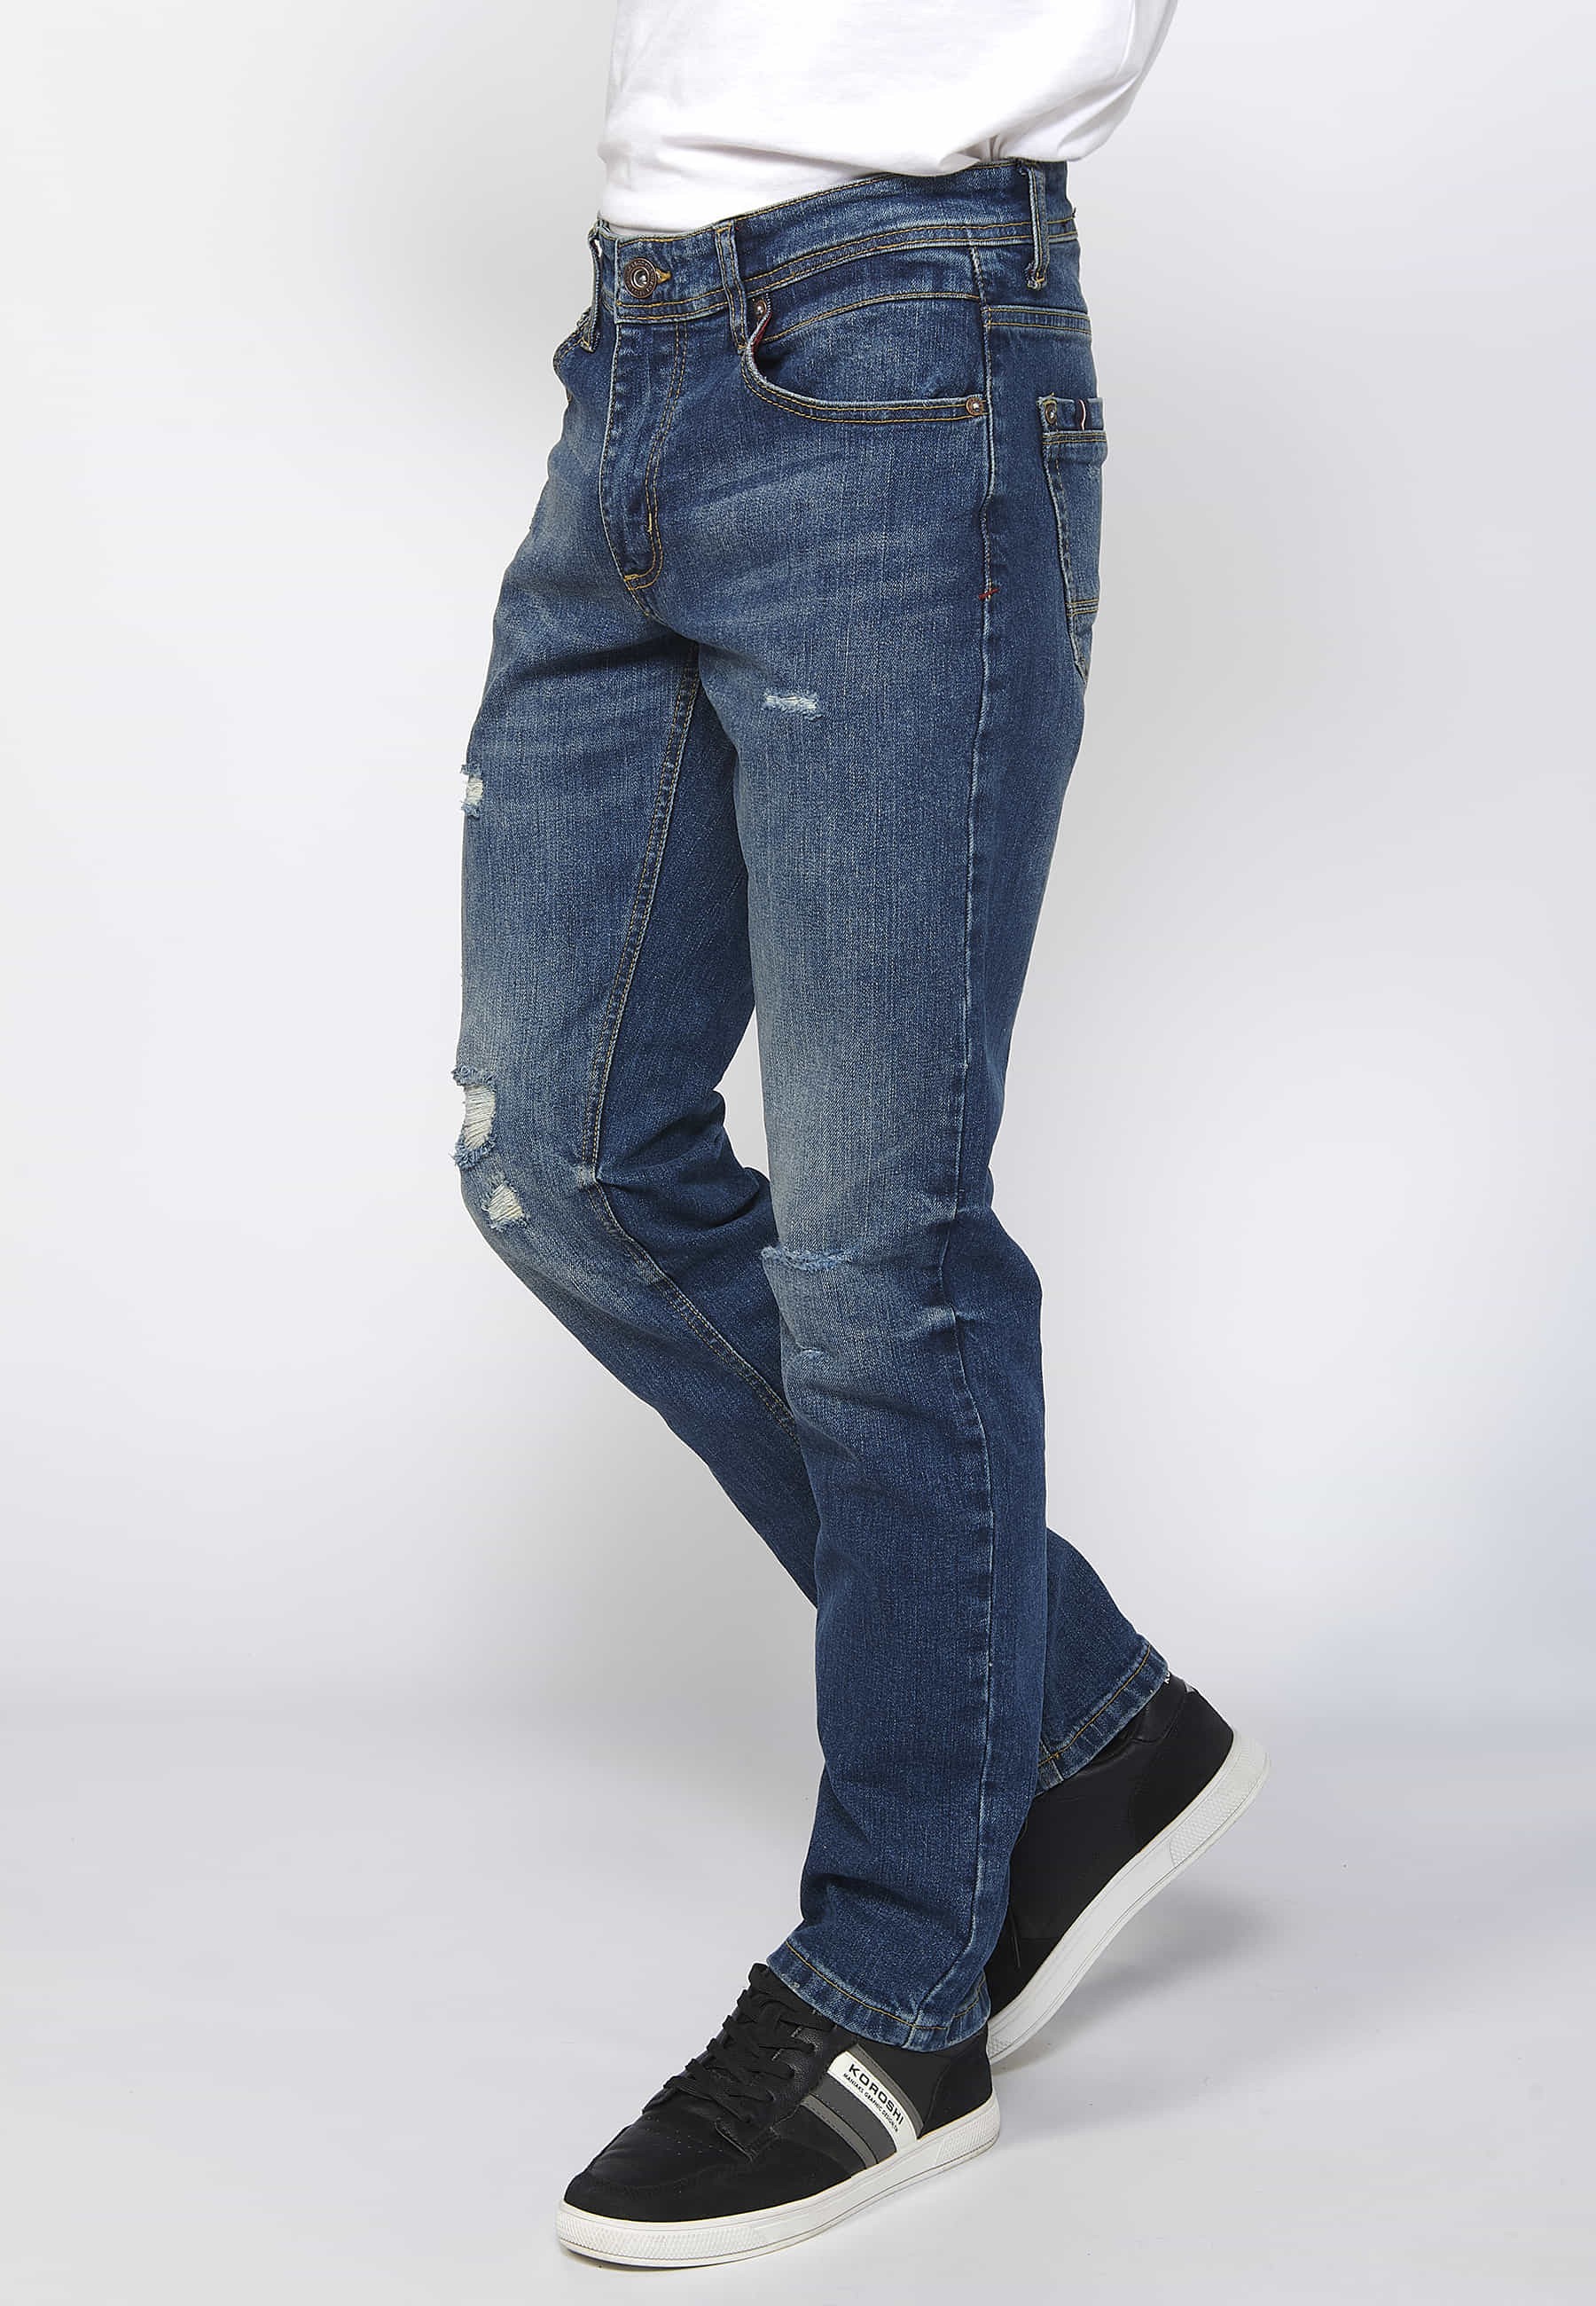 Pantalons llargs denim straigtht regular fit amb tancament davanter amb cremallera i botó color blau per a Home 2